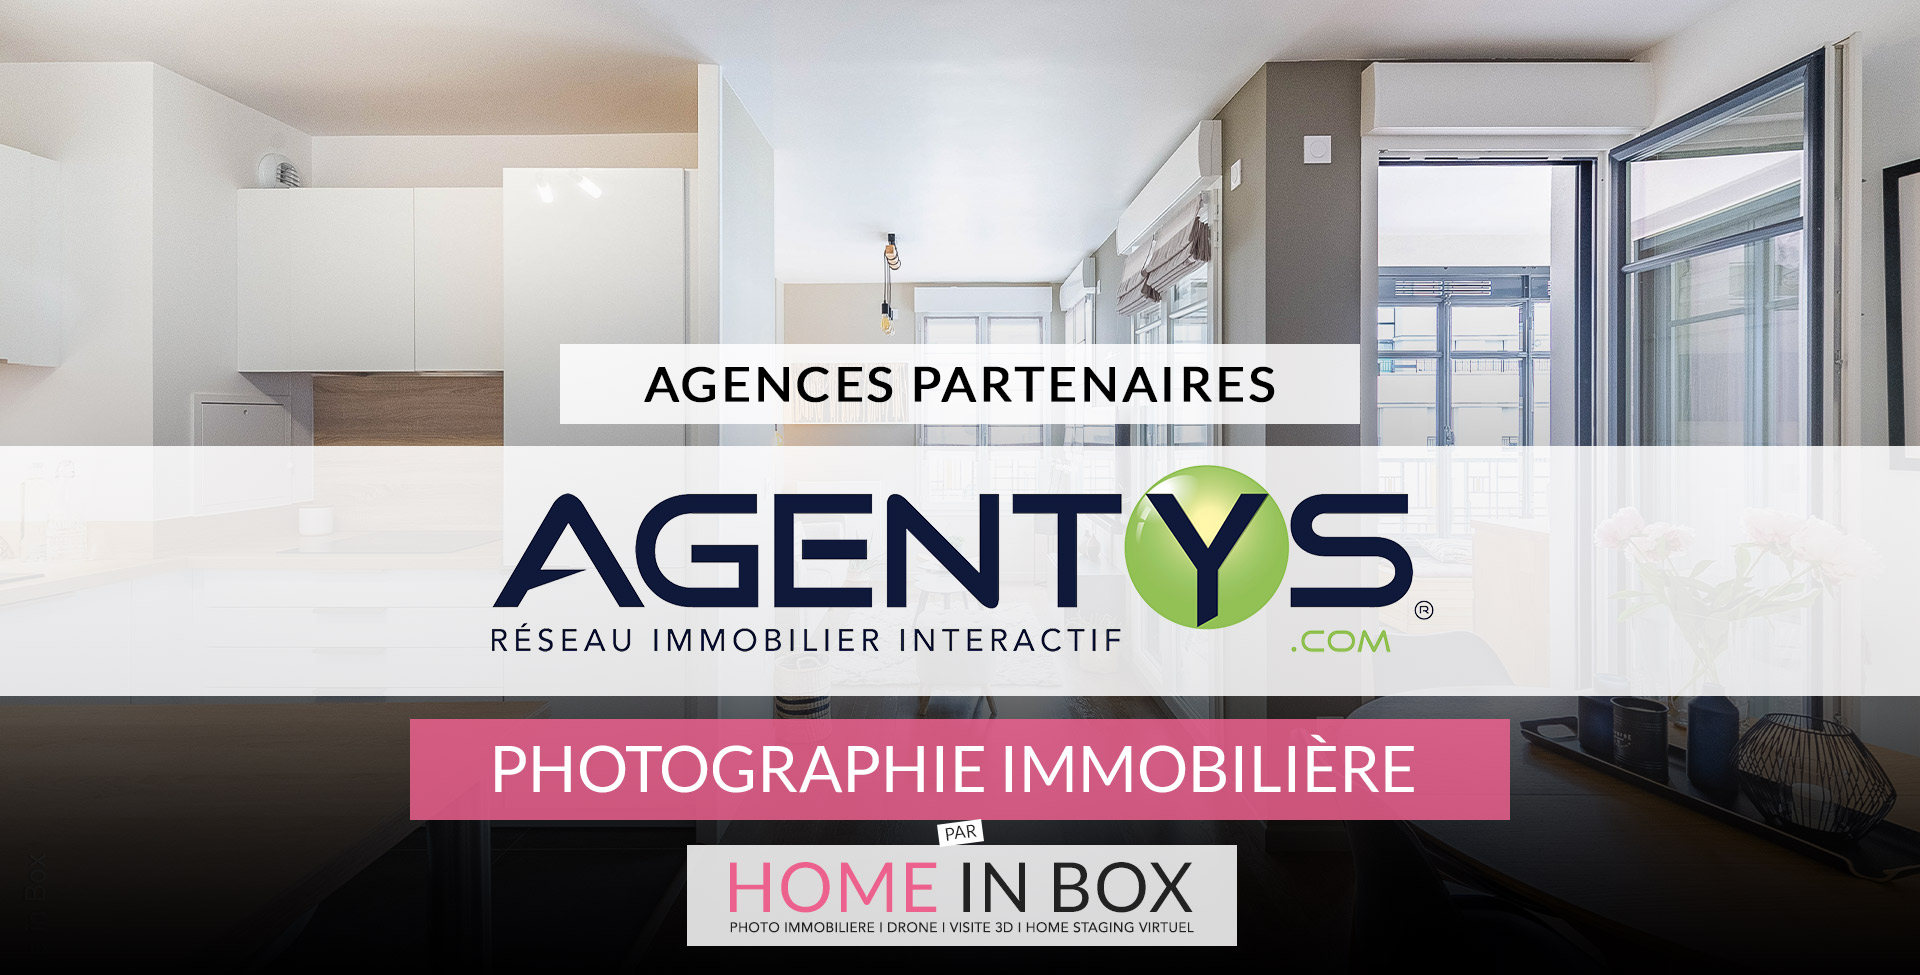 Agences Partenaires Réseau Agentys | Home in Box